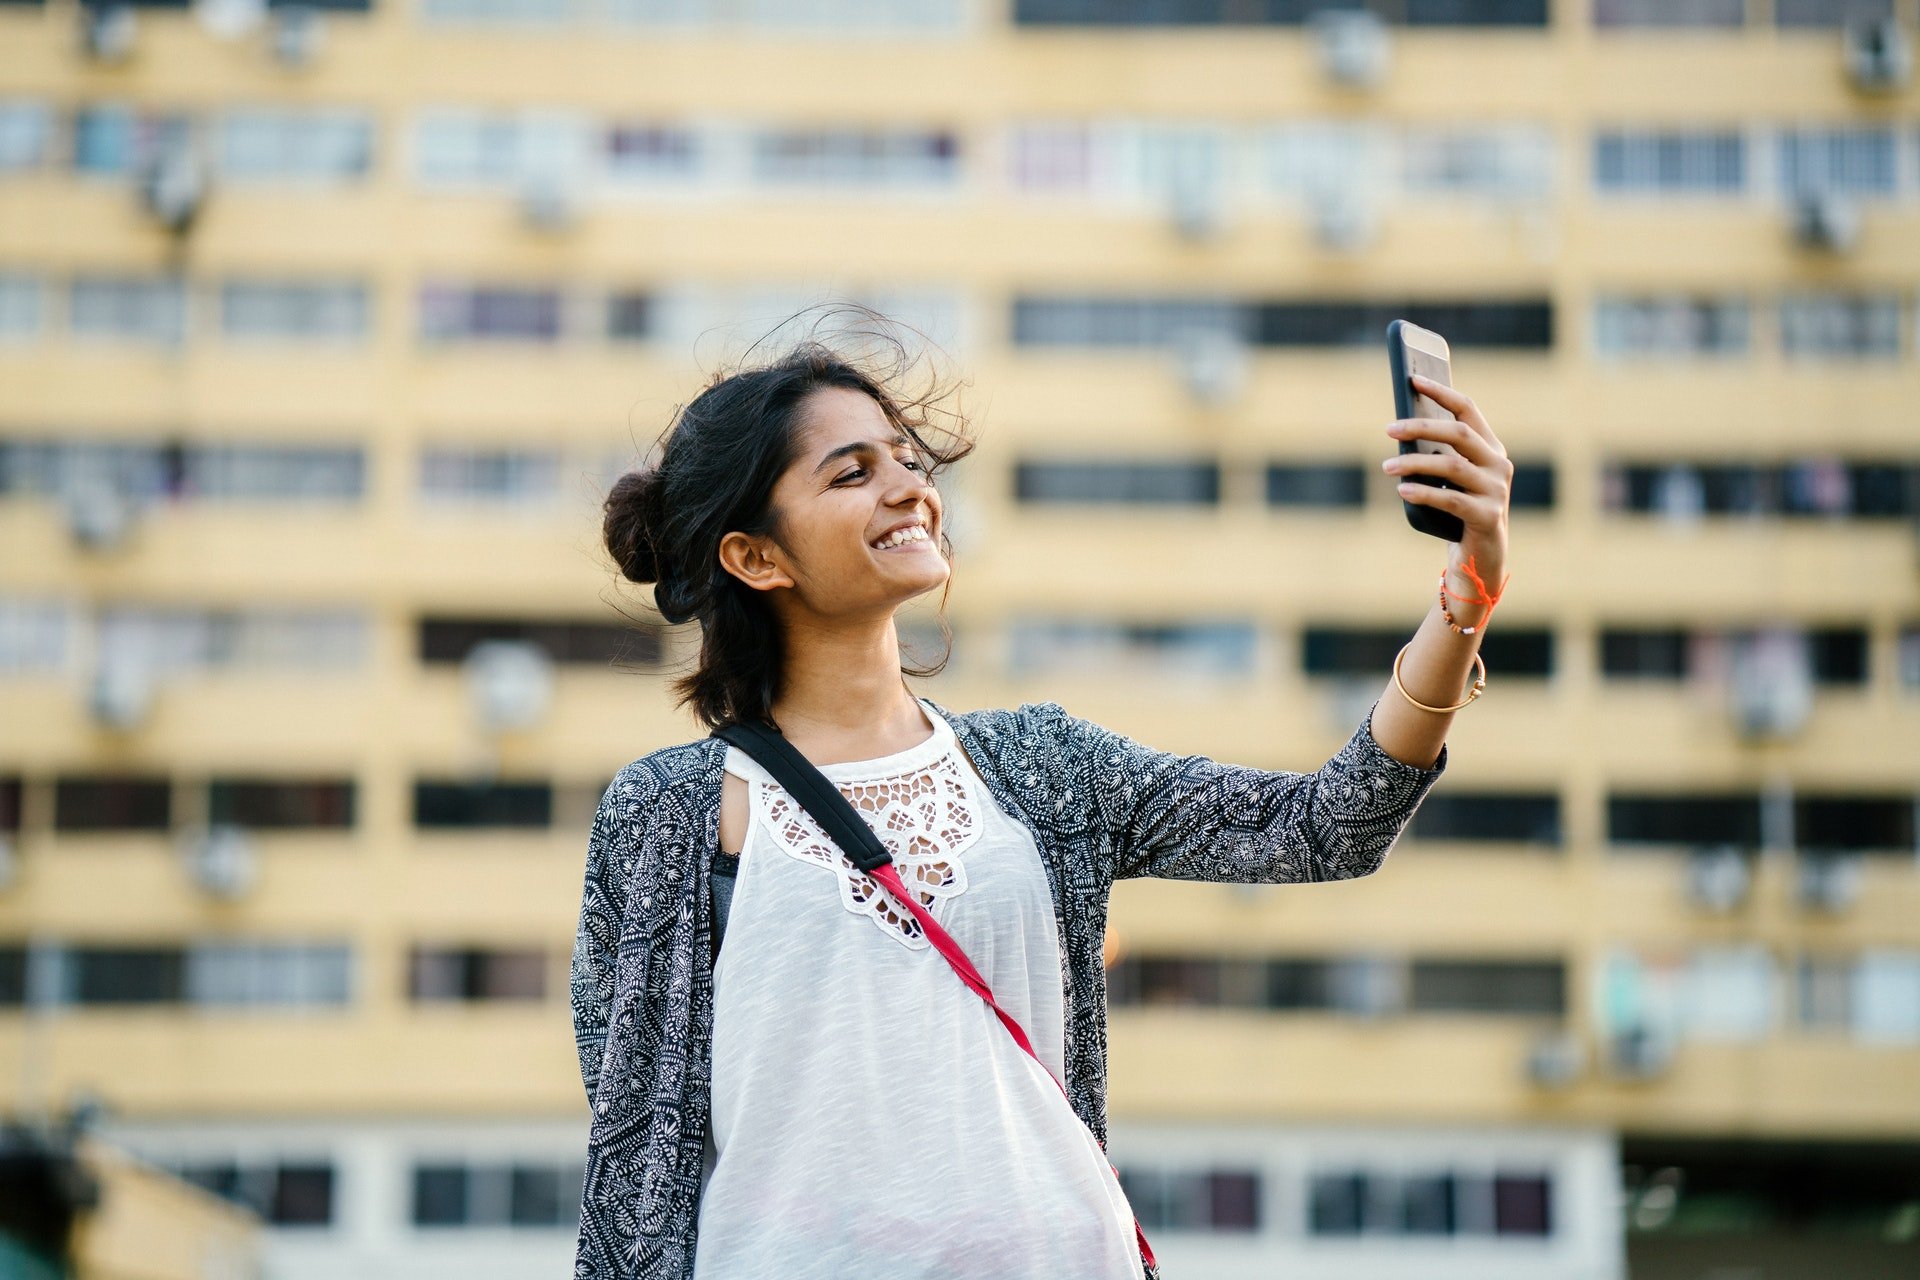 Mulher em frente a prédio, tirando selfie e sorrindo